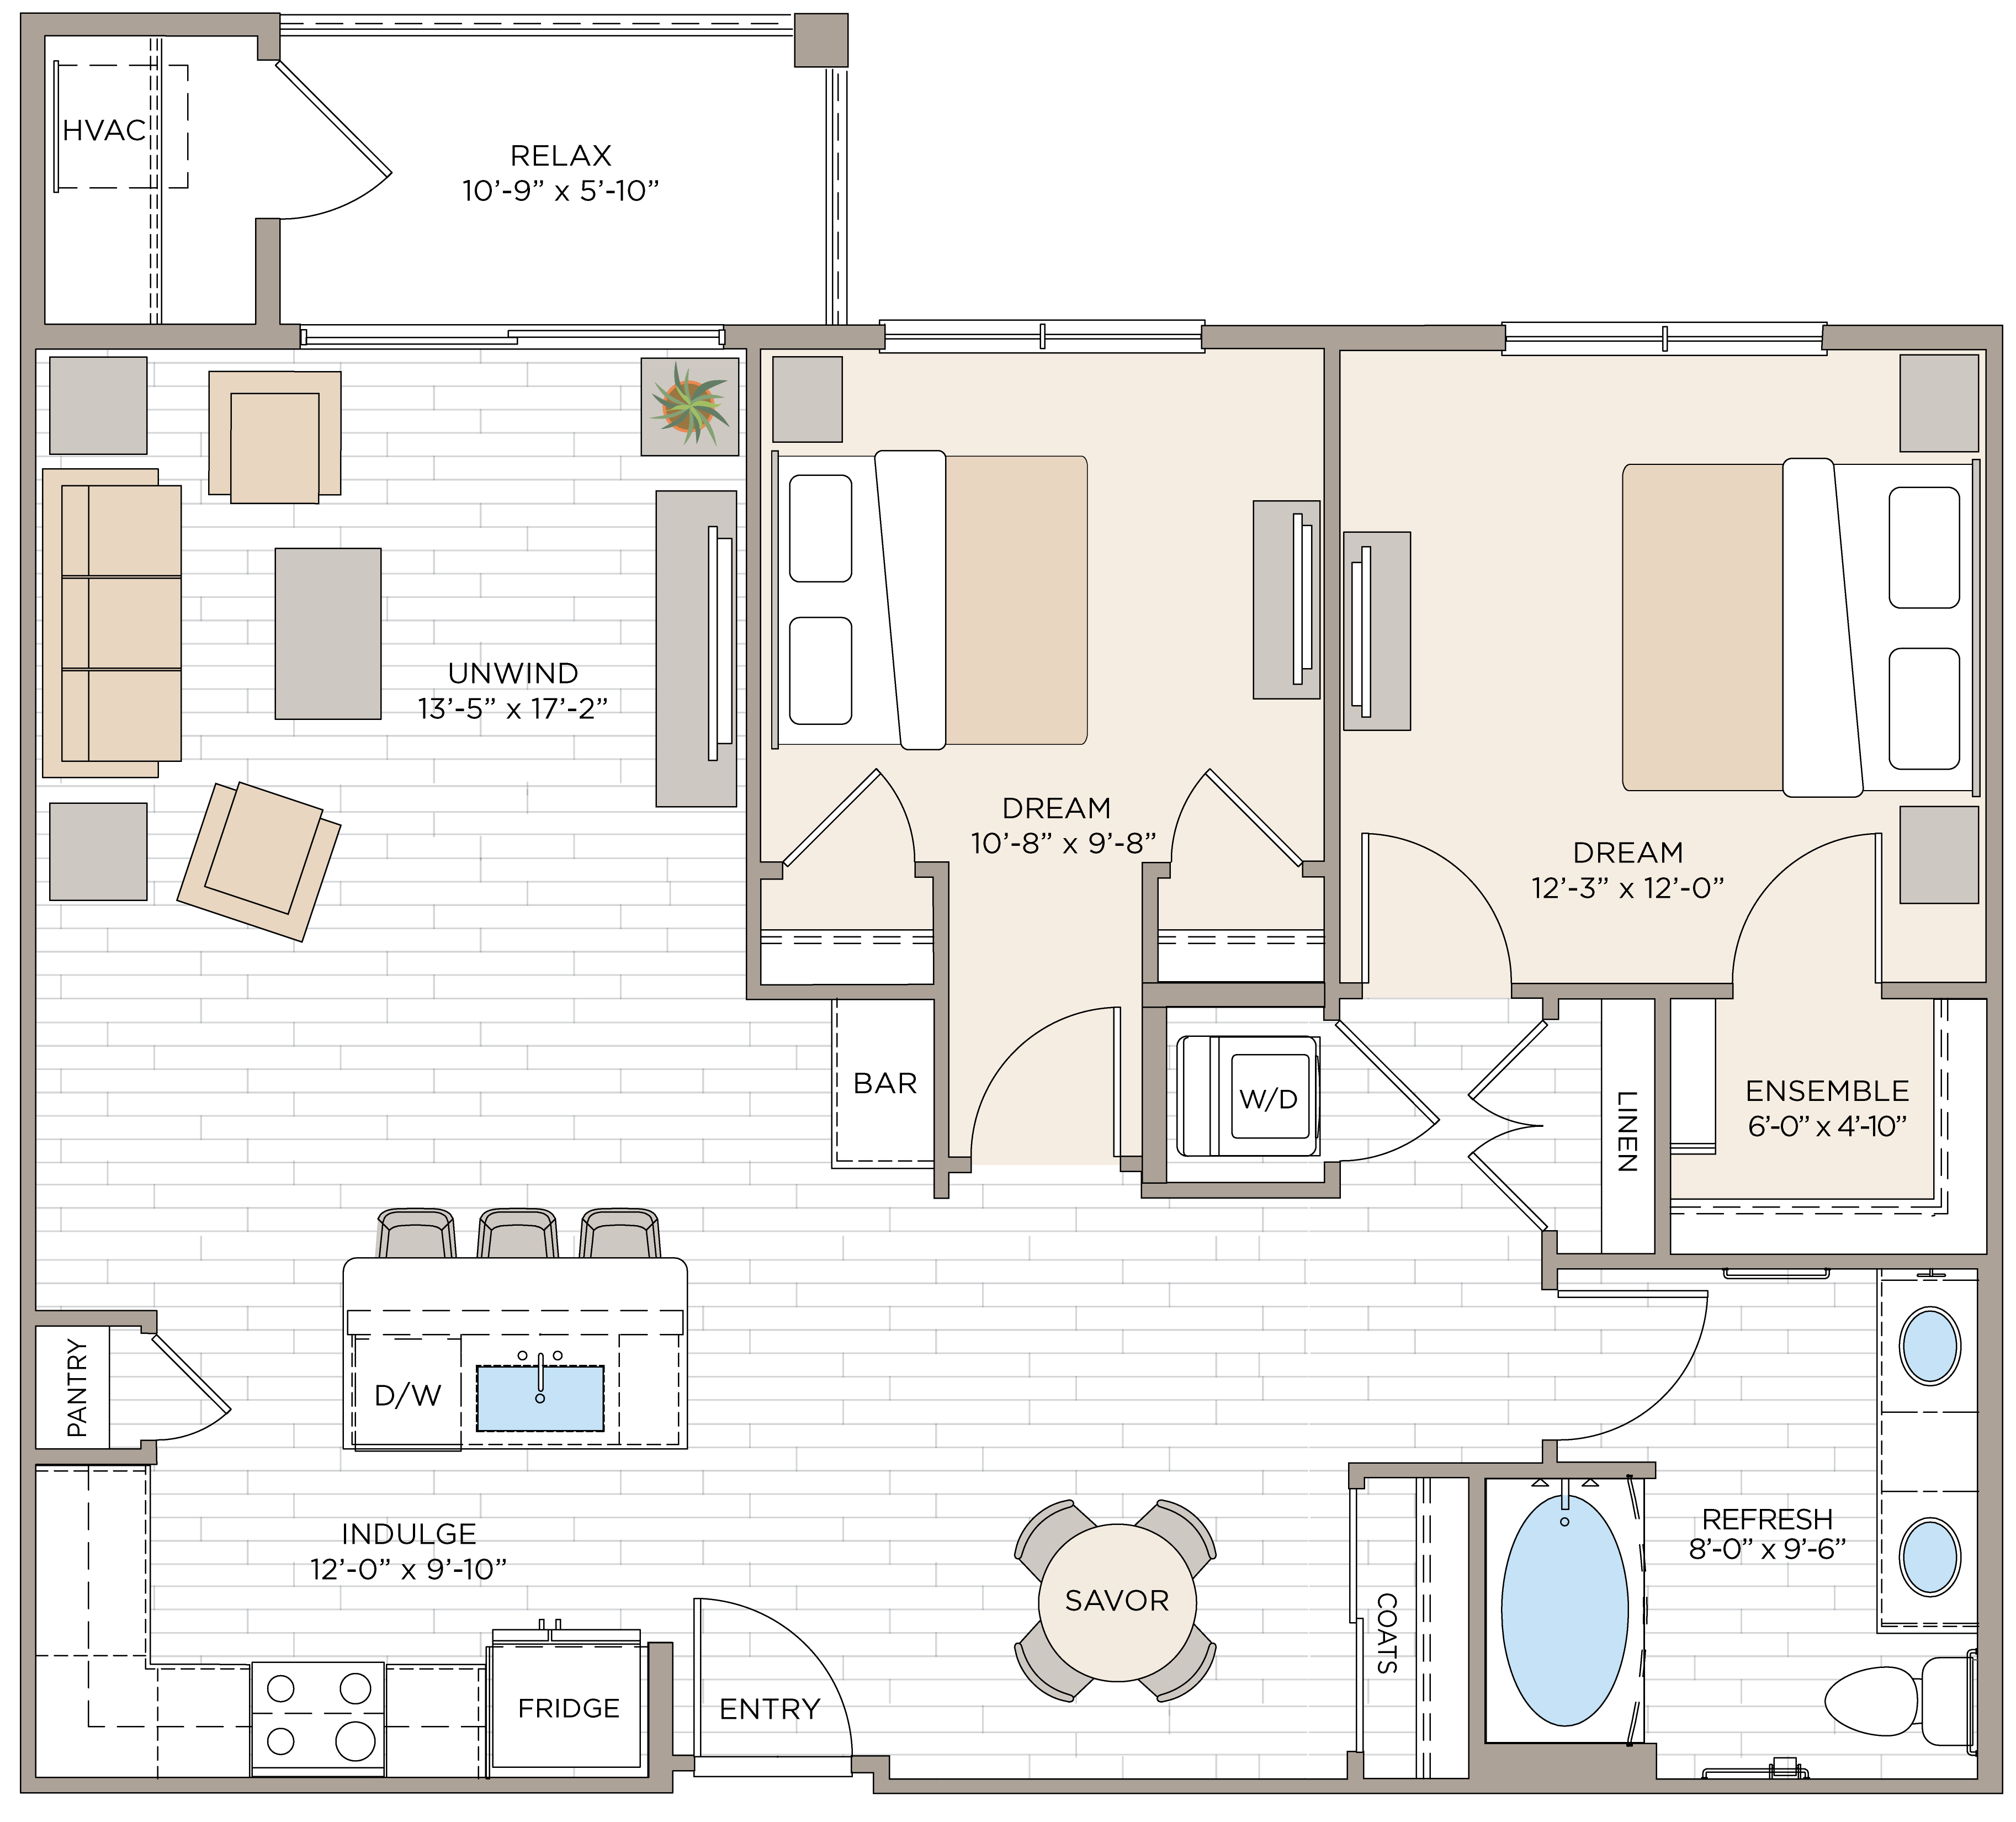 Floorplan for Unit #B1A, 2 bedroom unit at Halstead Maynard Crossing